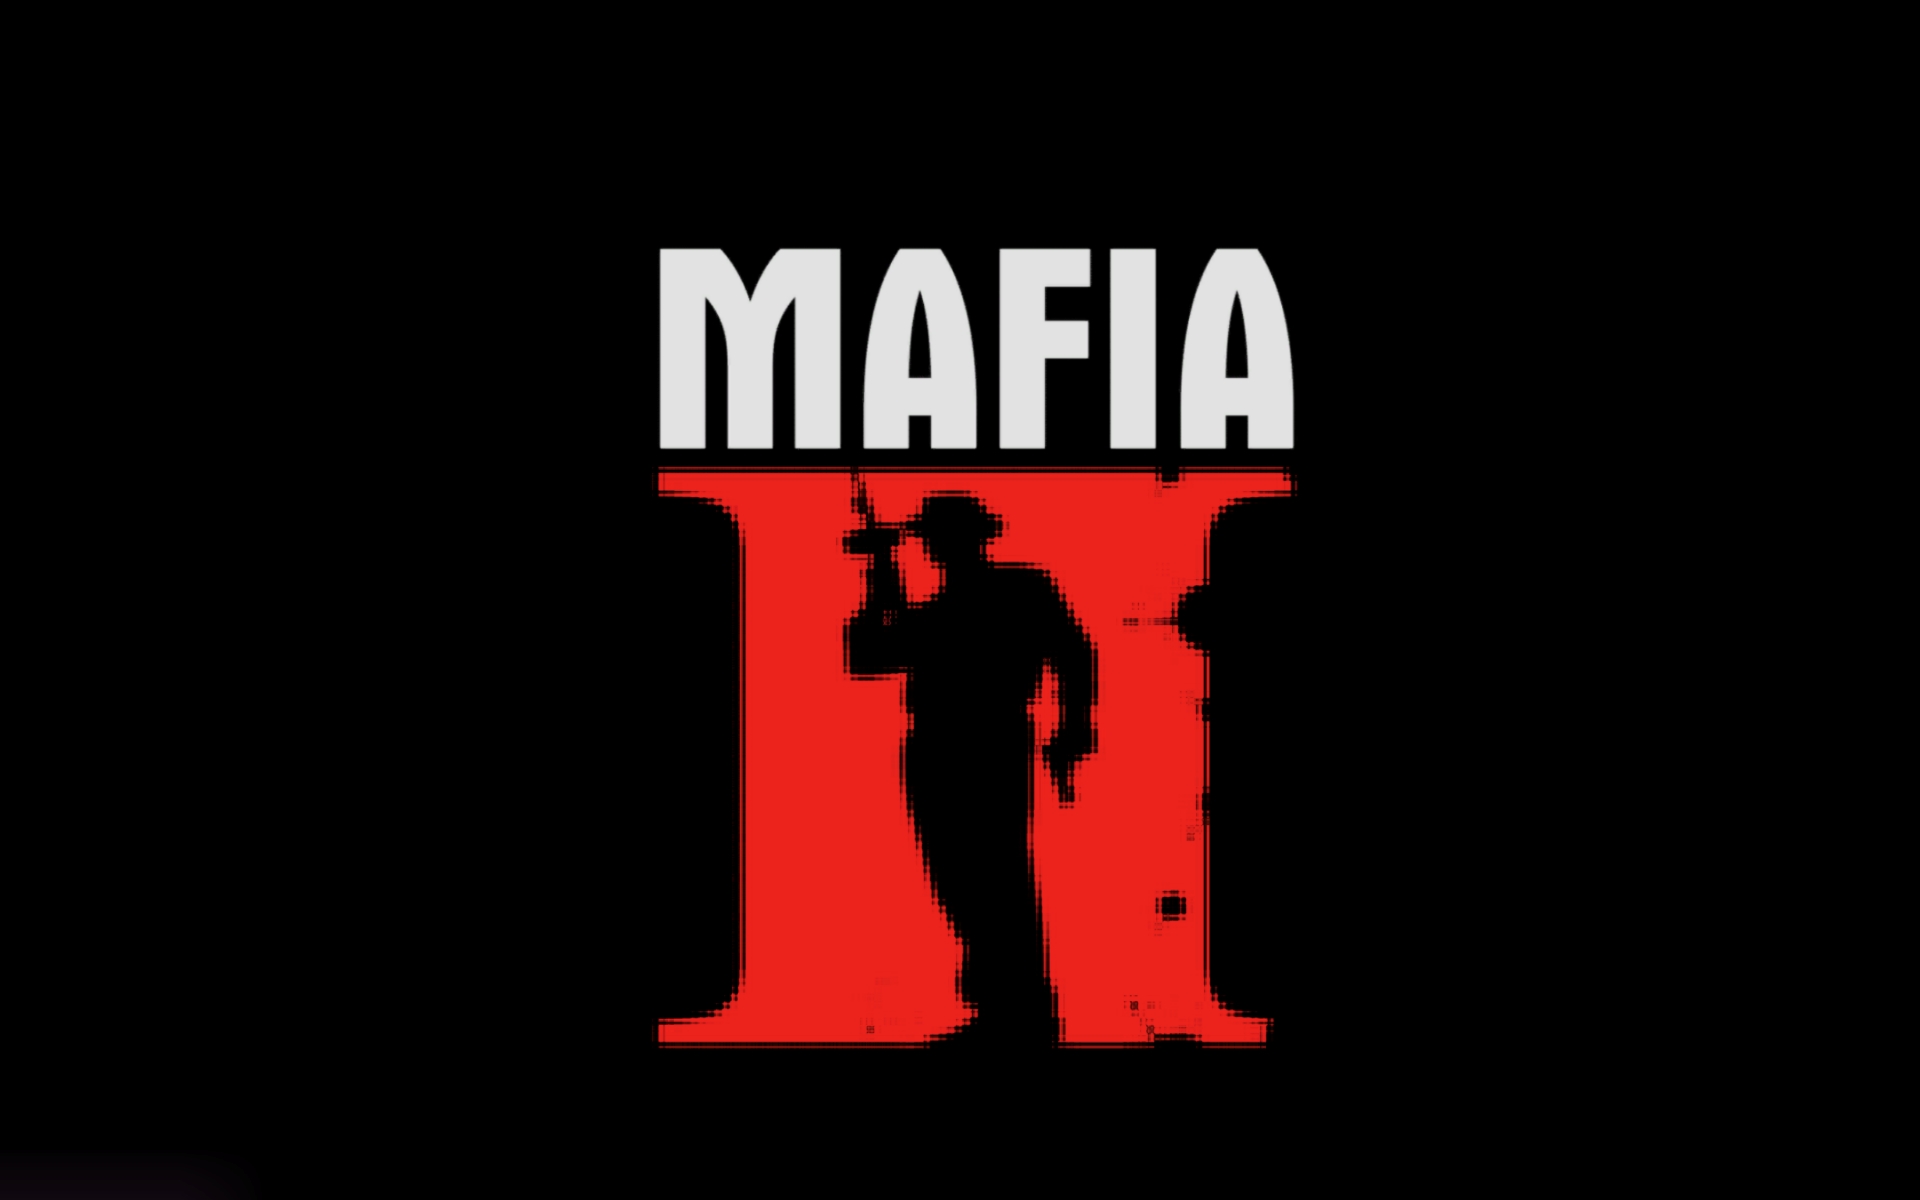 Mafia ii on steam фото 36